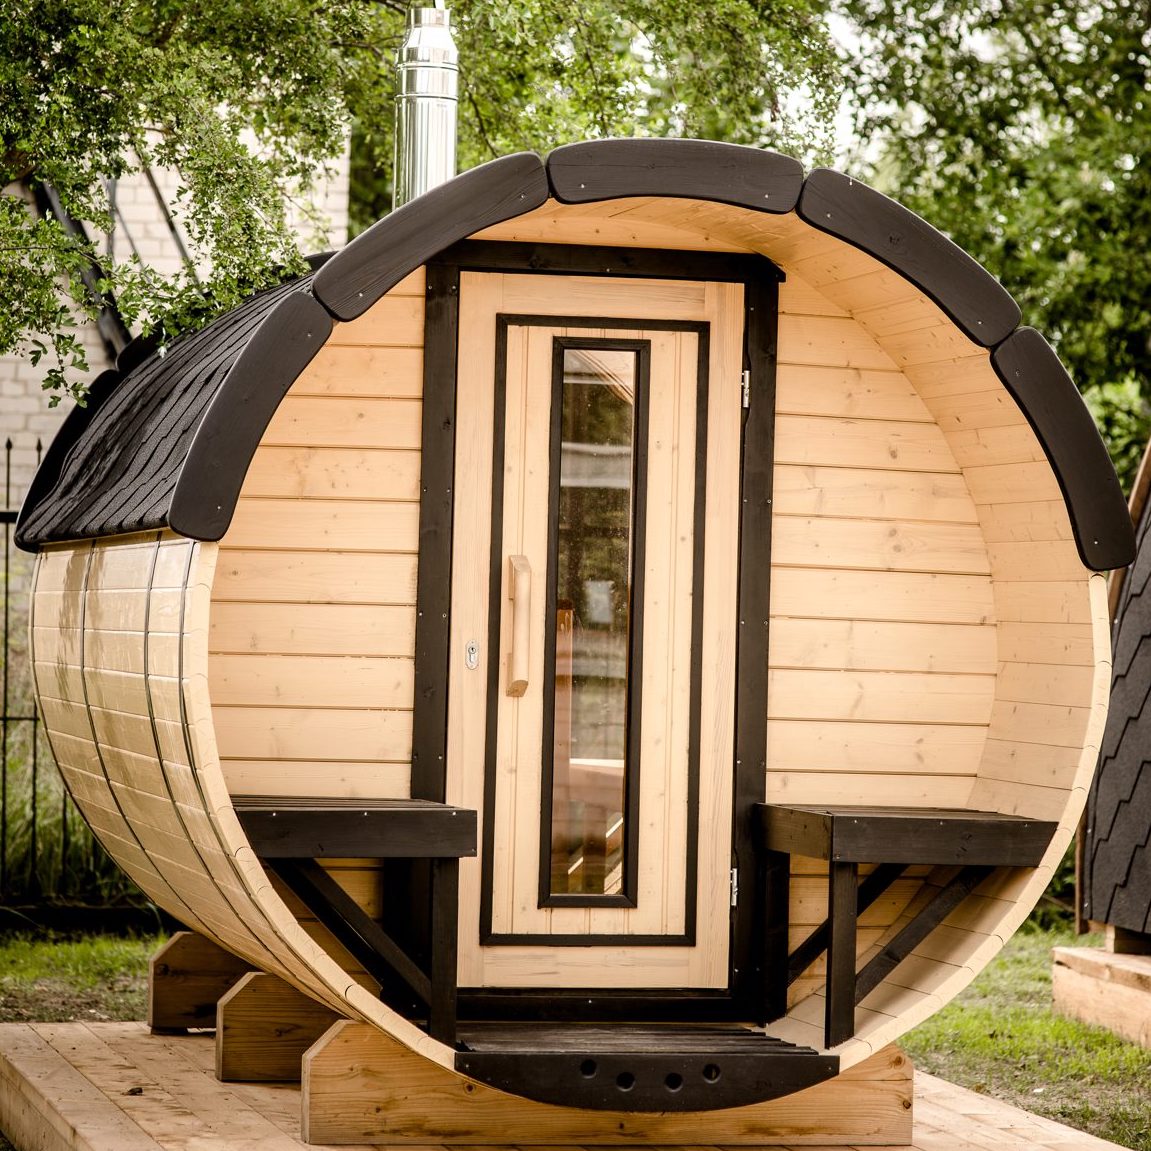 Hemlock Wood Garden Barrel Sauna - The Sauna World